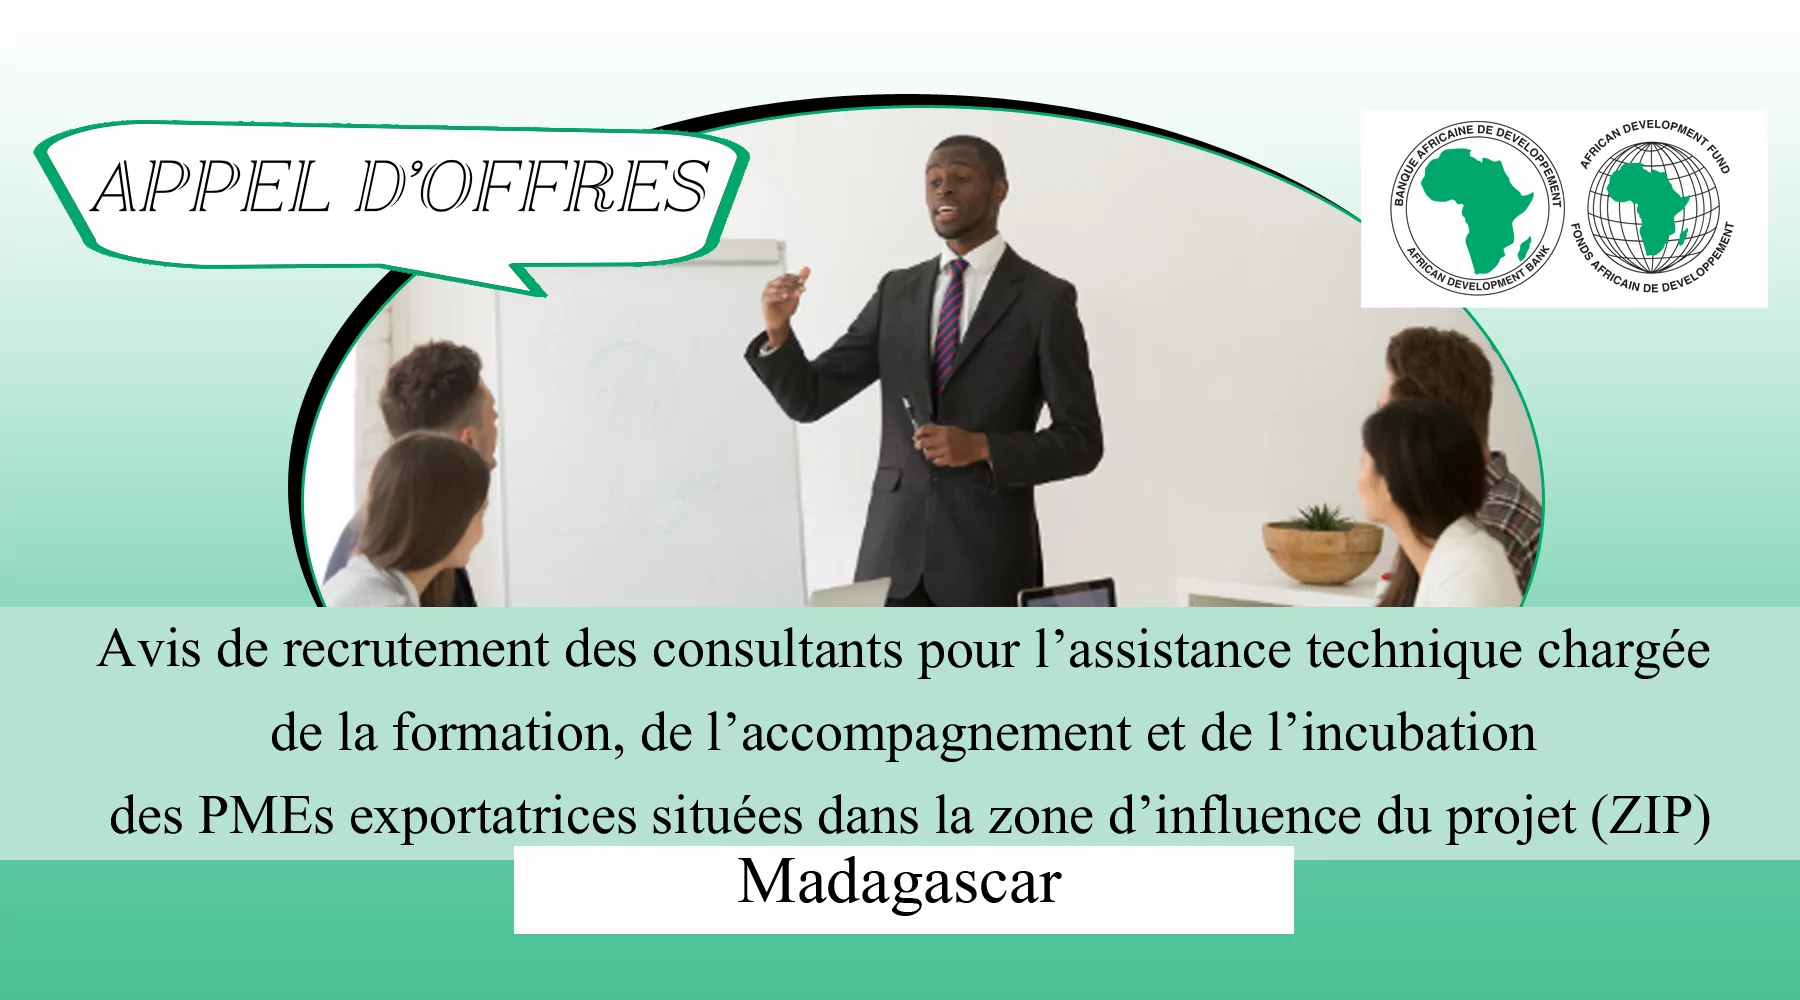 Avis de recrutement des consultants pour l’assistance technique chargée de la formation, de l’accompagnement et de l’incubation des PMEs exportatrices situées dans la zone d’influence du projet (ZIP), Madagascar